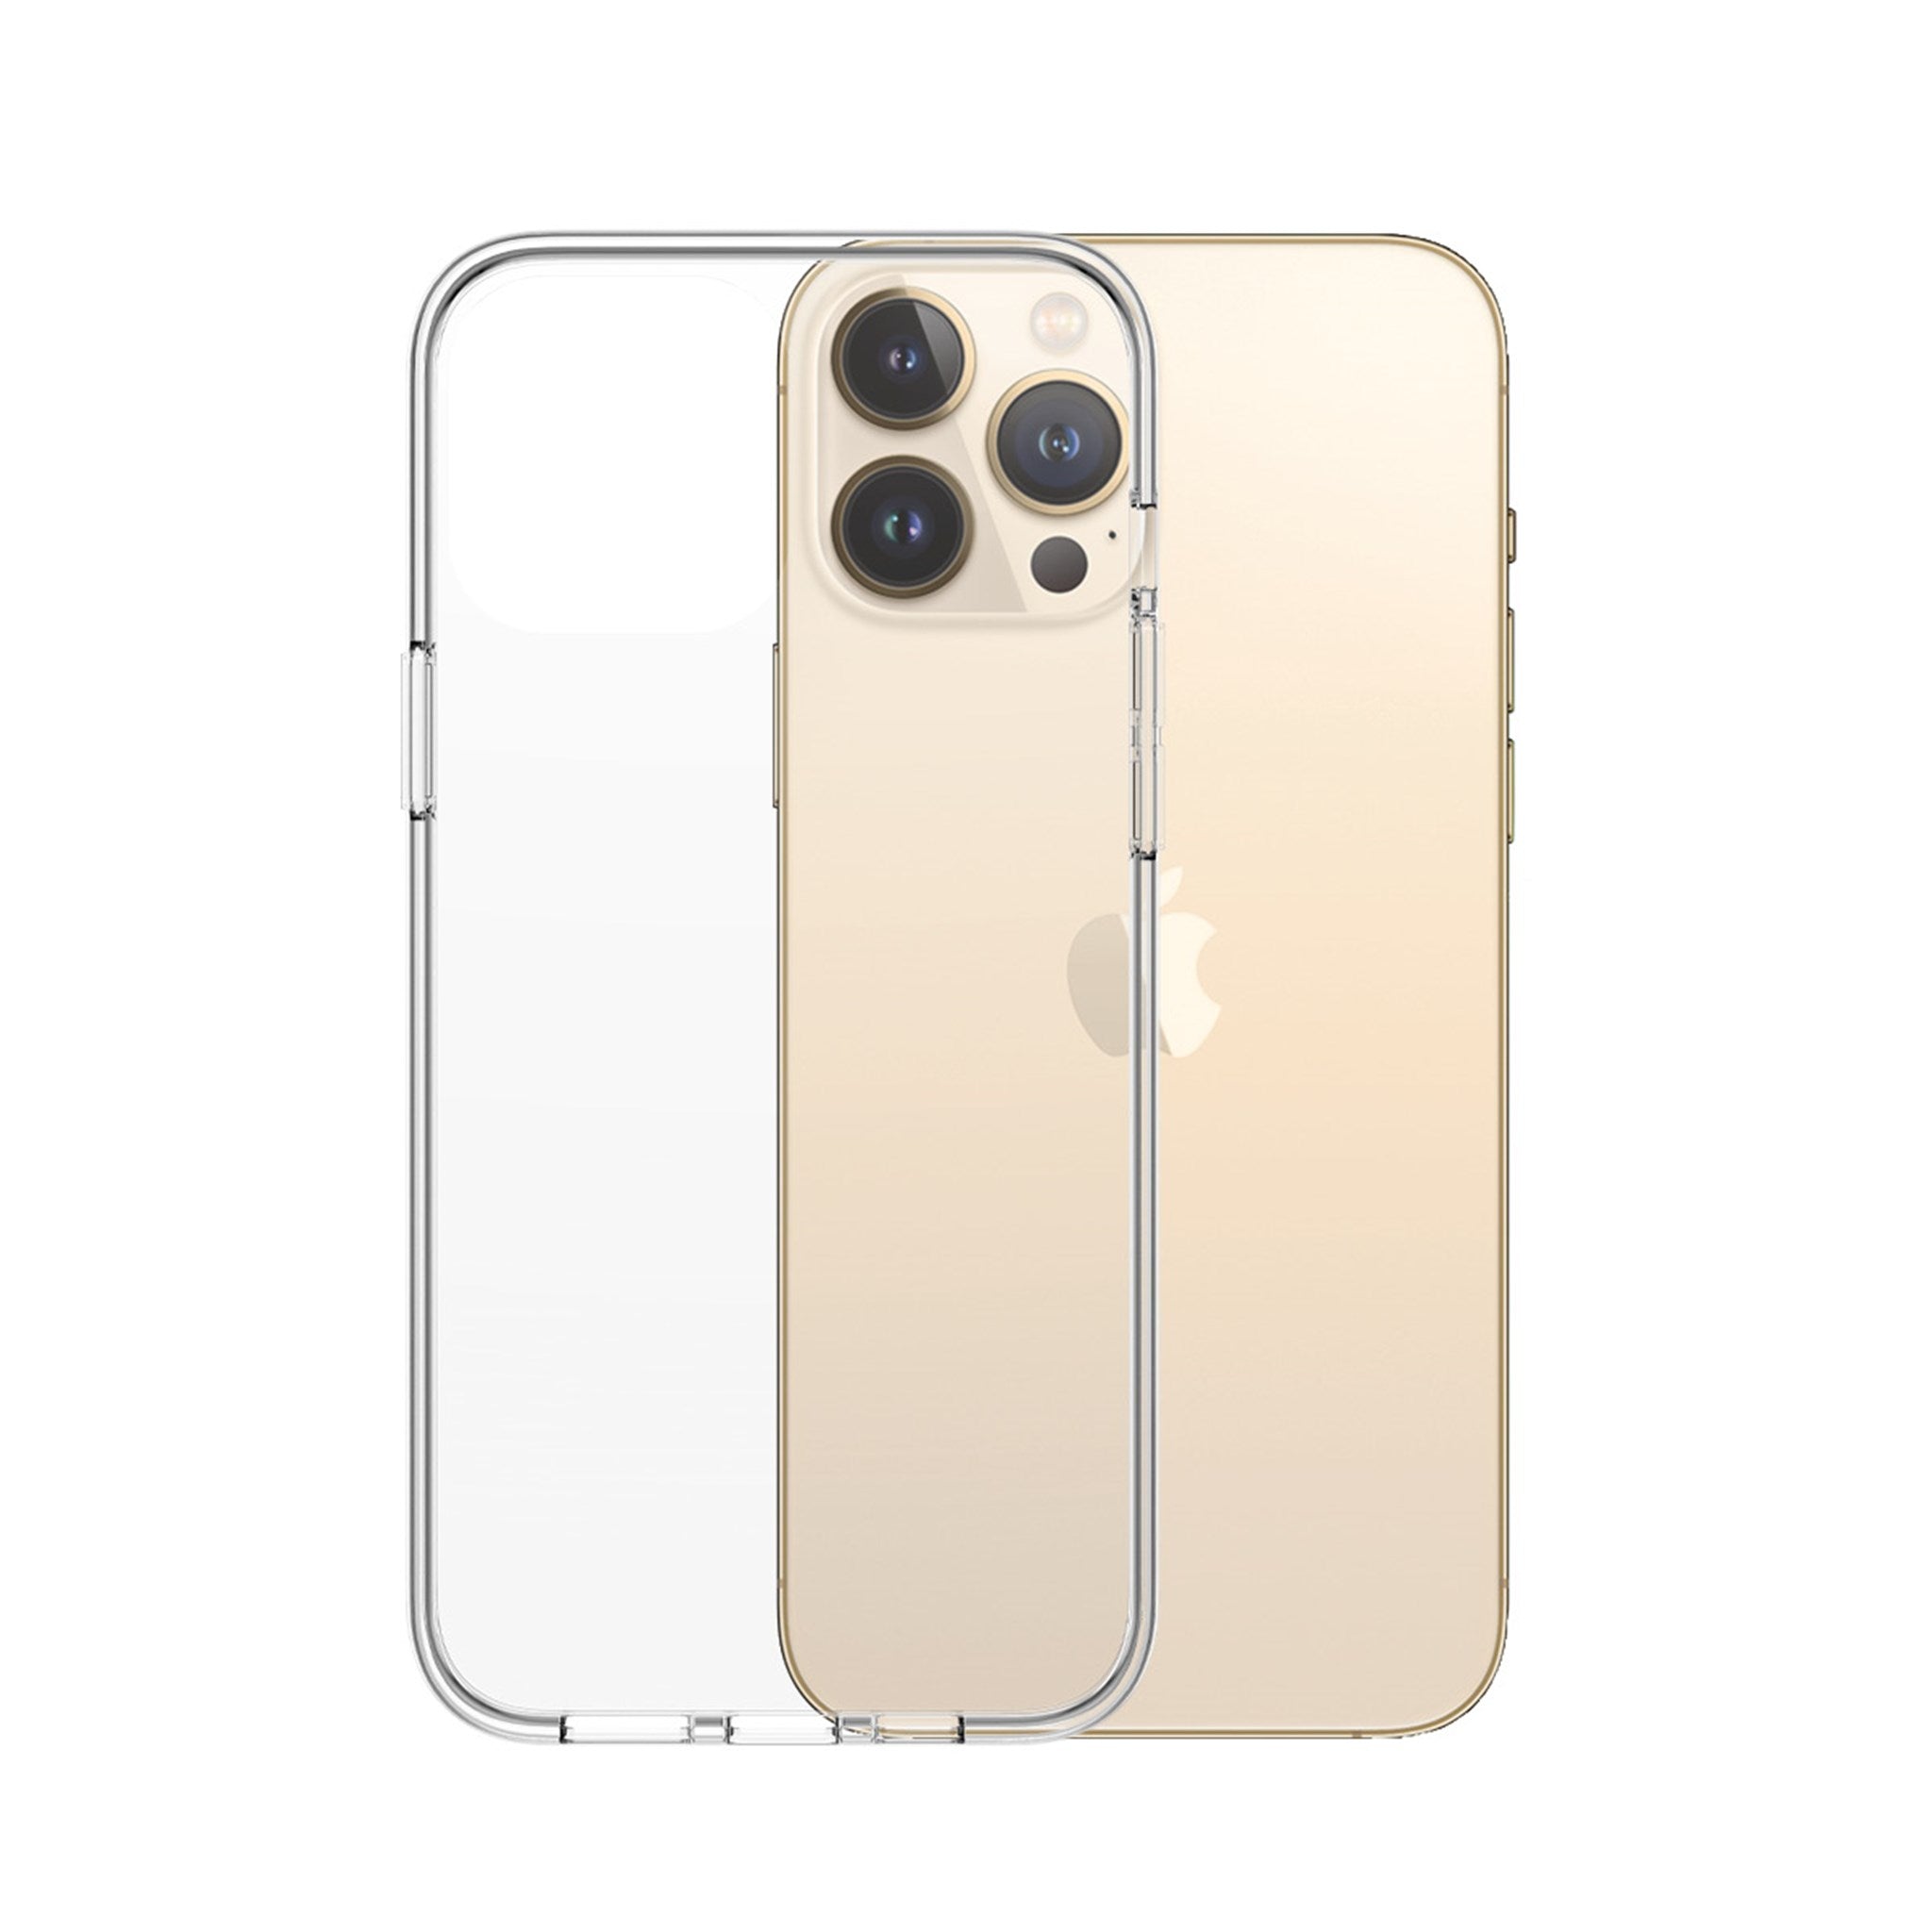 PanzerGlass PicturePerfect - Apple iPhone 13 Pro Max Verre trempé  Protection Objectif Caméra - Compatible Coque 4-123356-1 